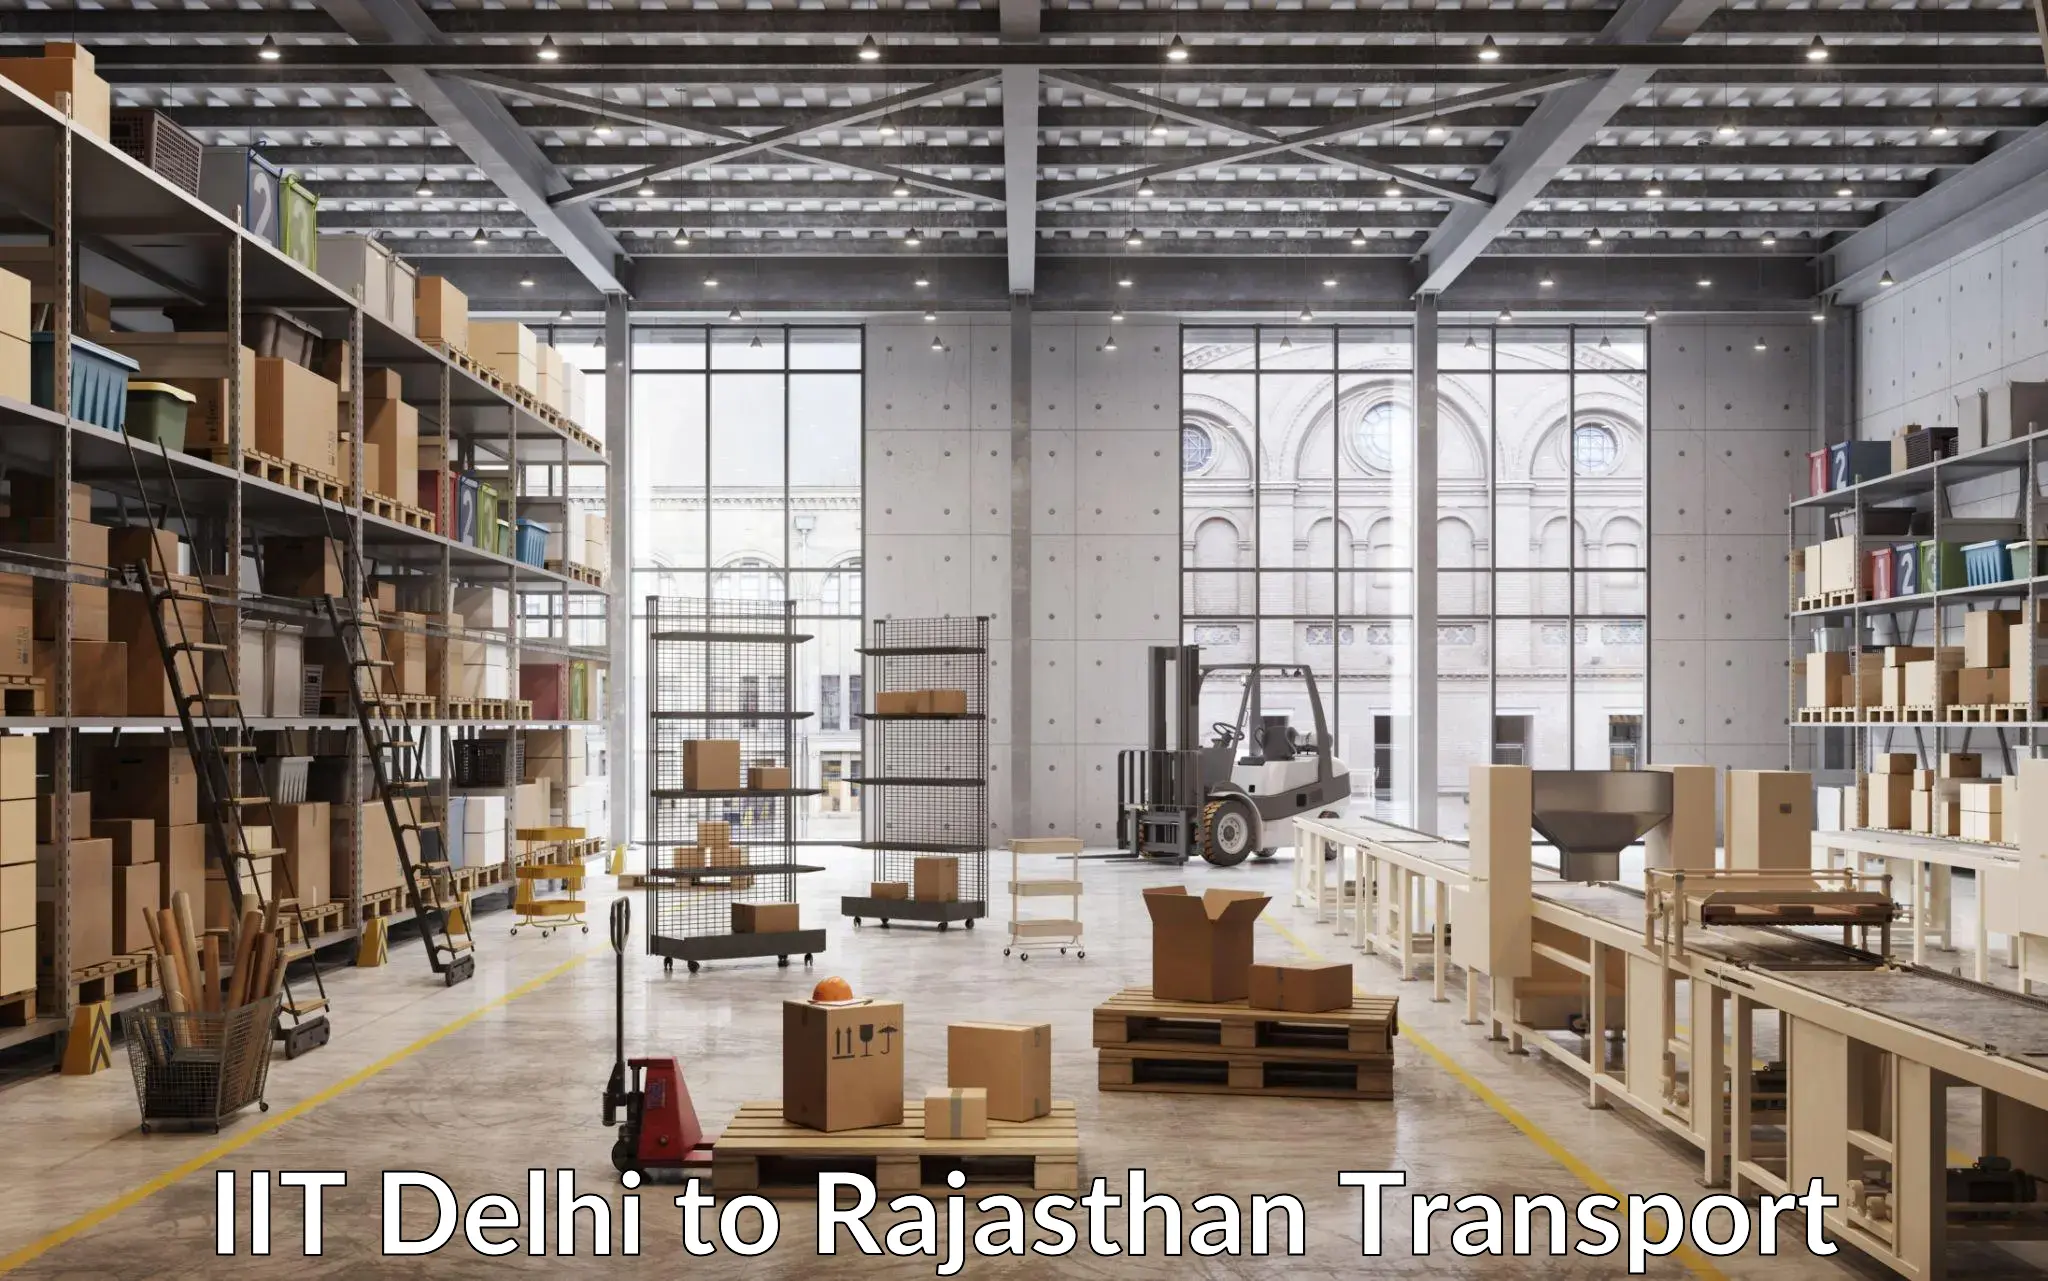 Nearby transport service IIT Delhi to Nainwa